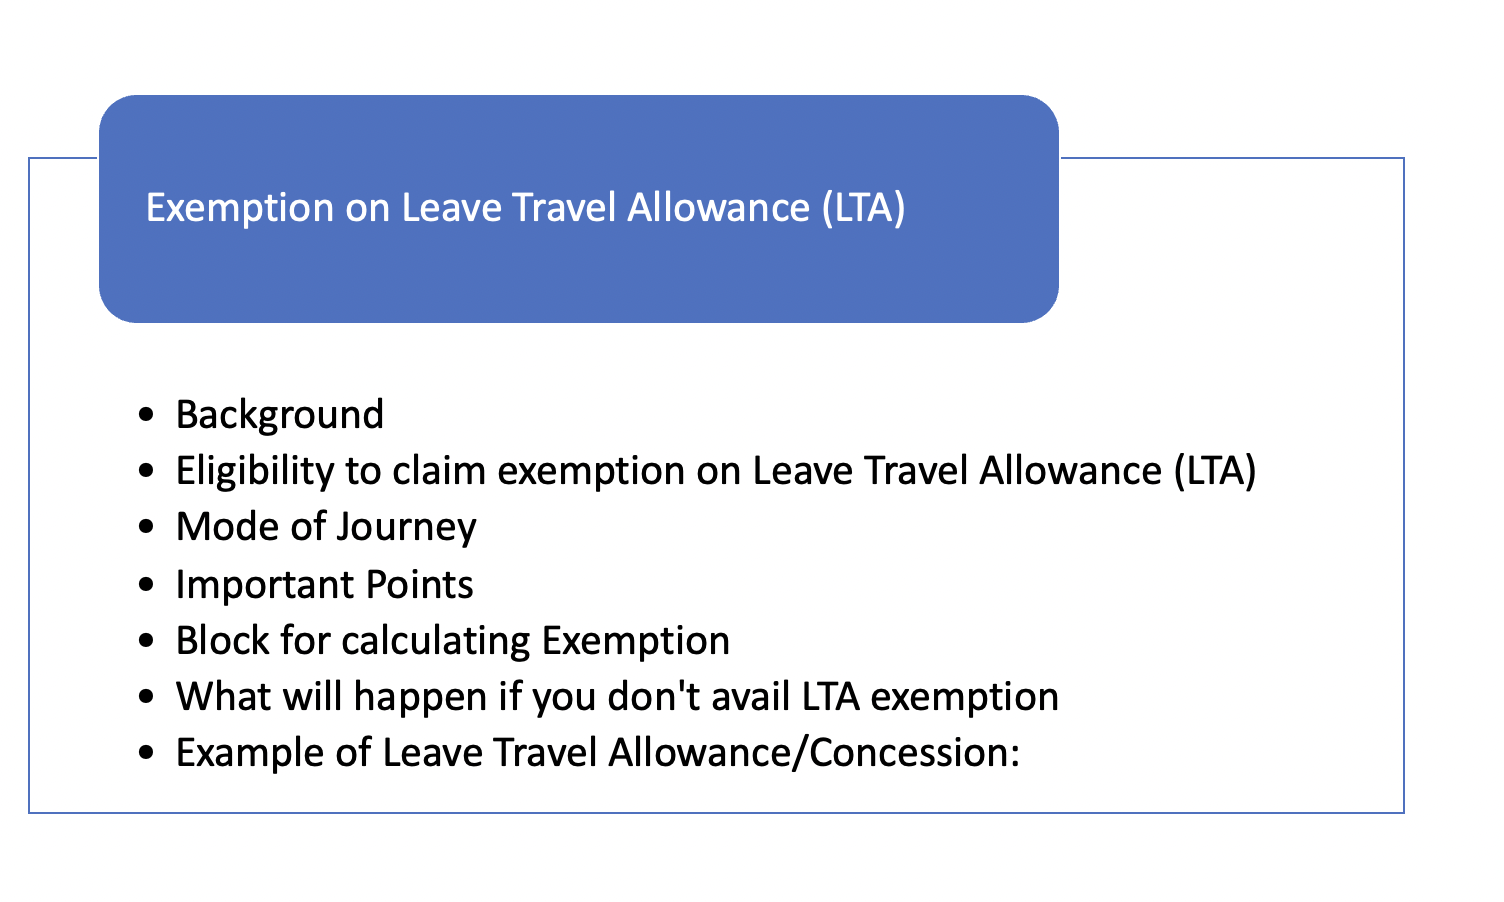 td 2022 travel allowance